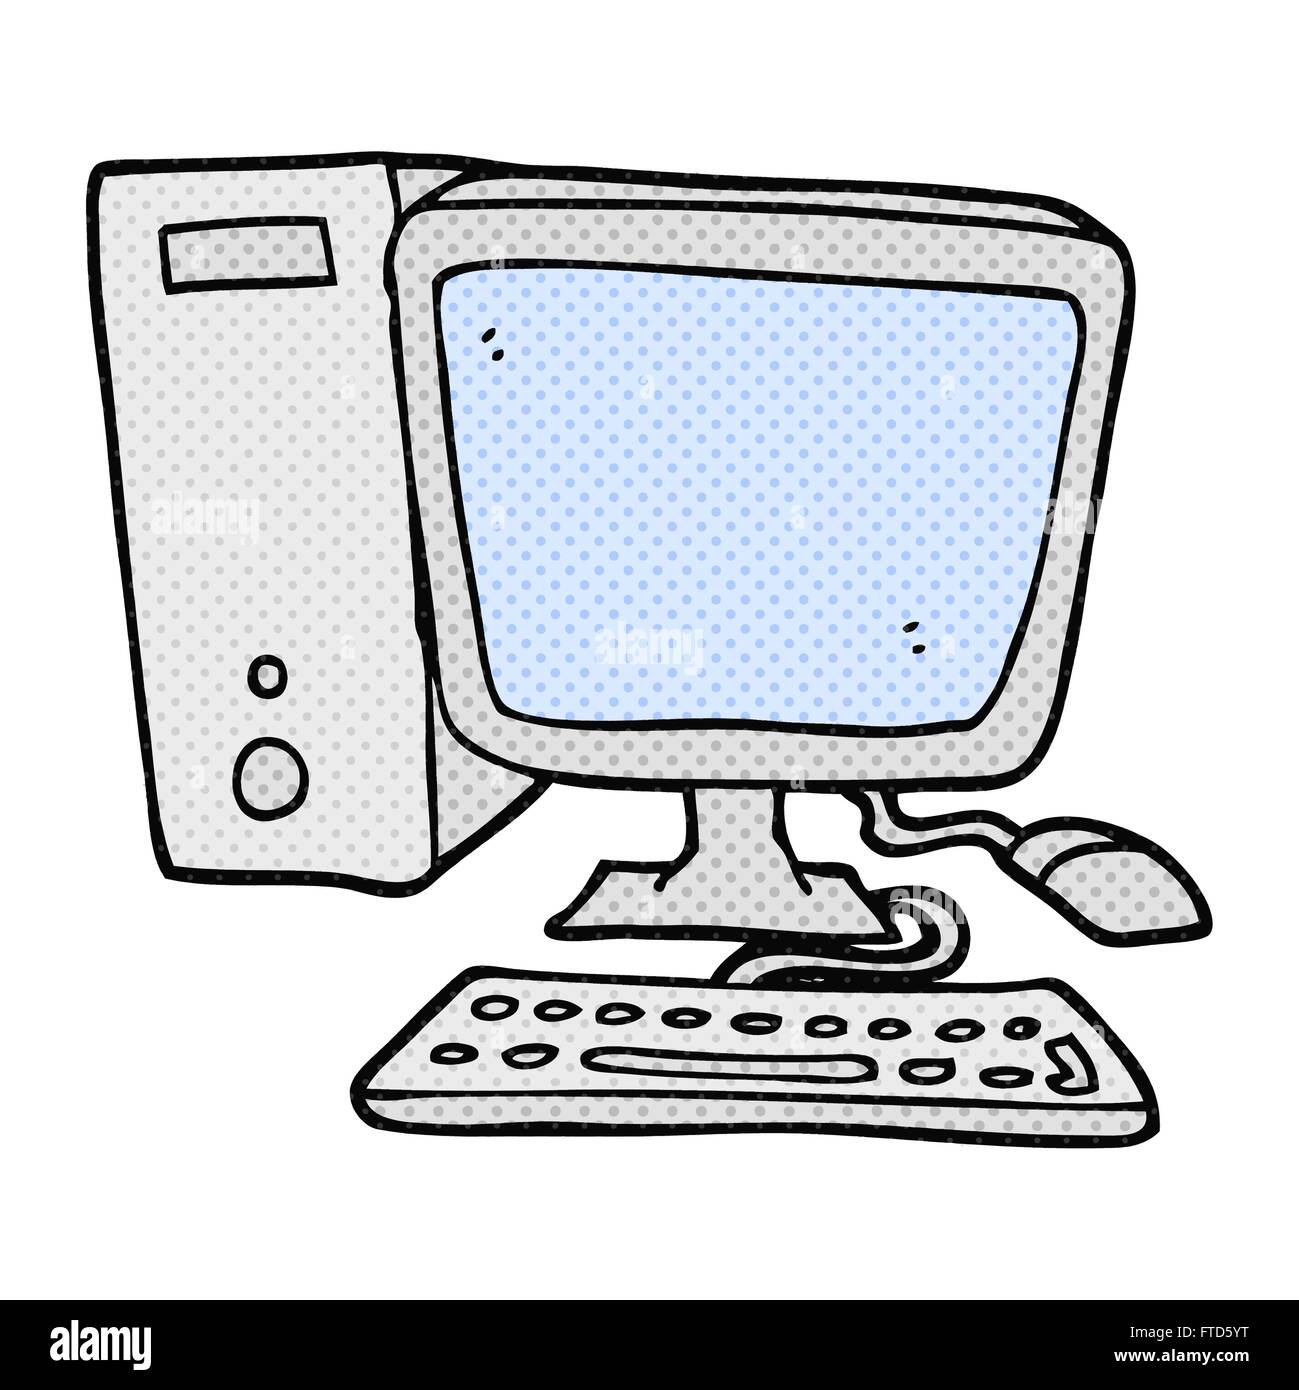 Freihändig gezeichnete Cartoon-desktop-computer Stock-Vektorgrafik - Alamy